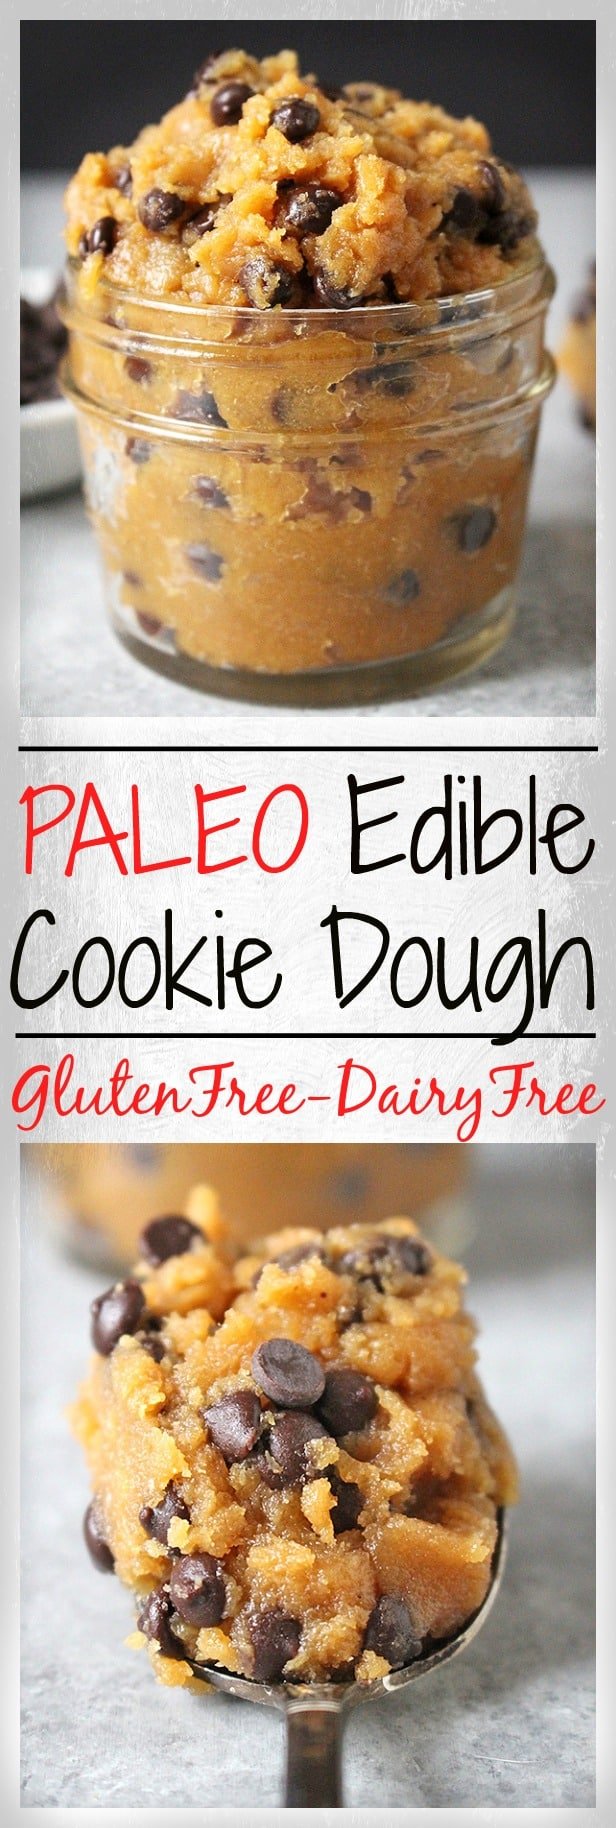 Paleo Edible Cookie Dough 